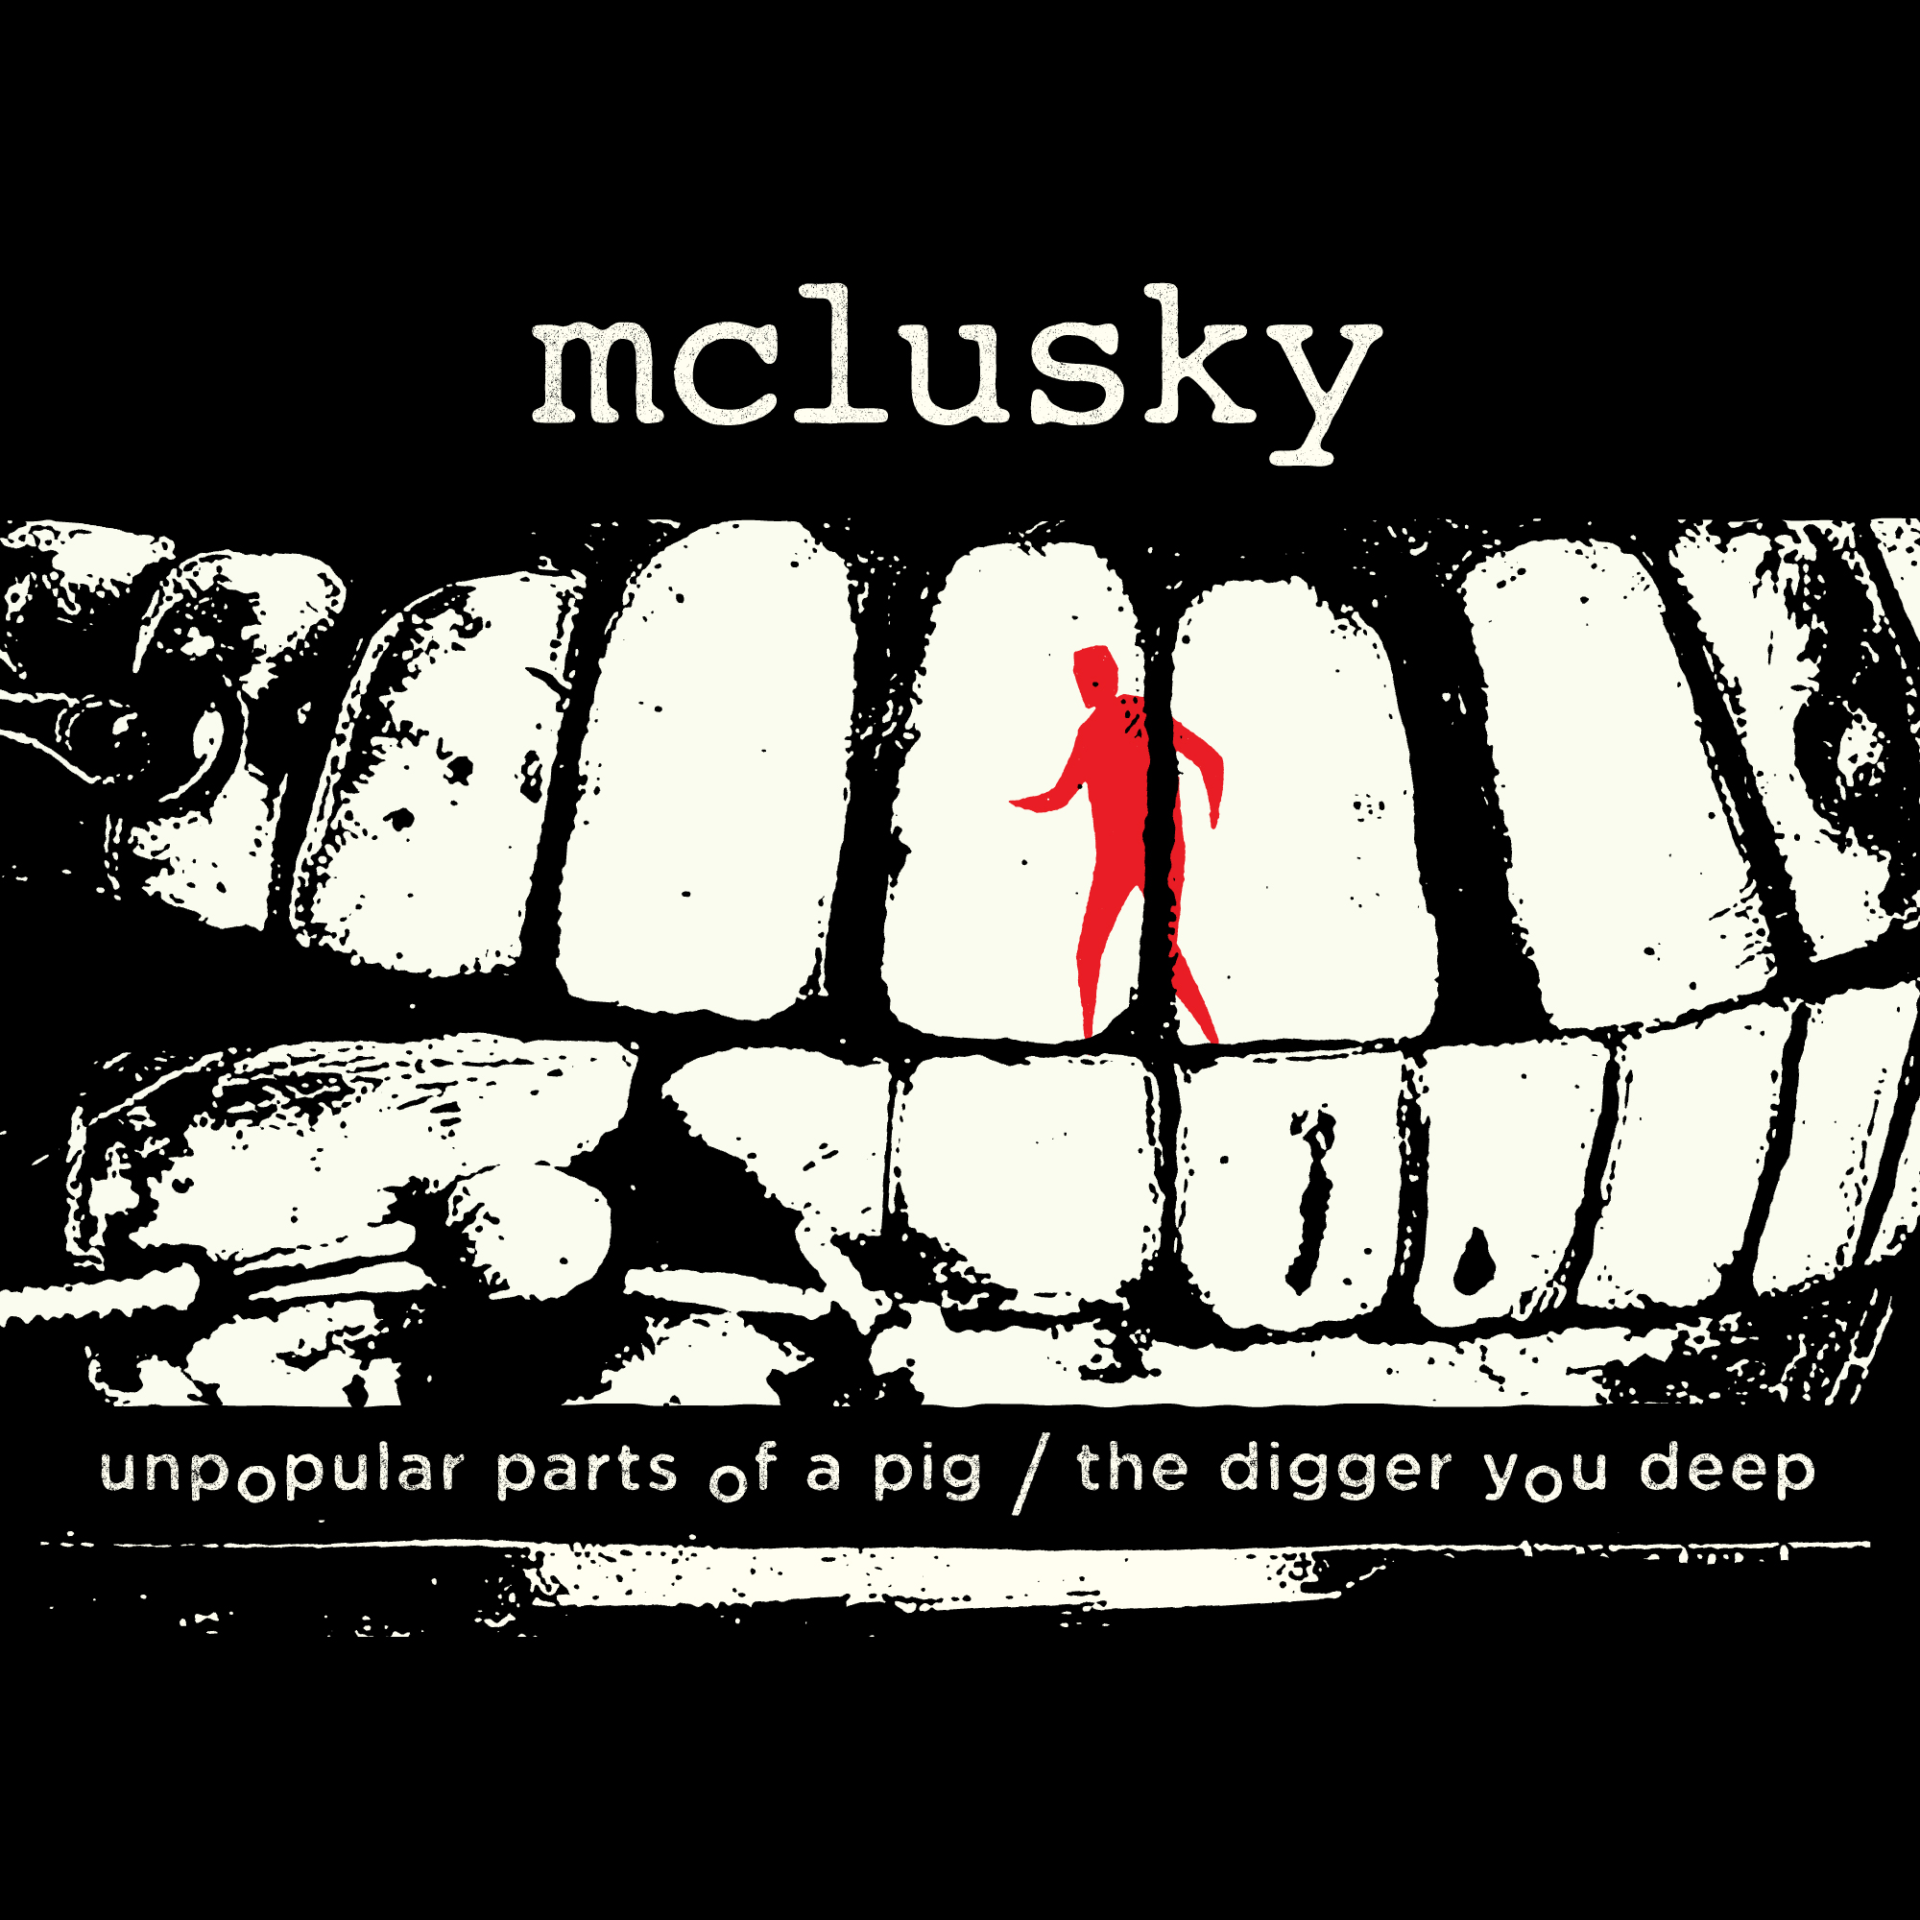 Mclusky vuelve con fuerza tras dos décadas de silencio con cuatro nuevas canciones